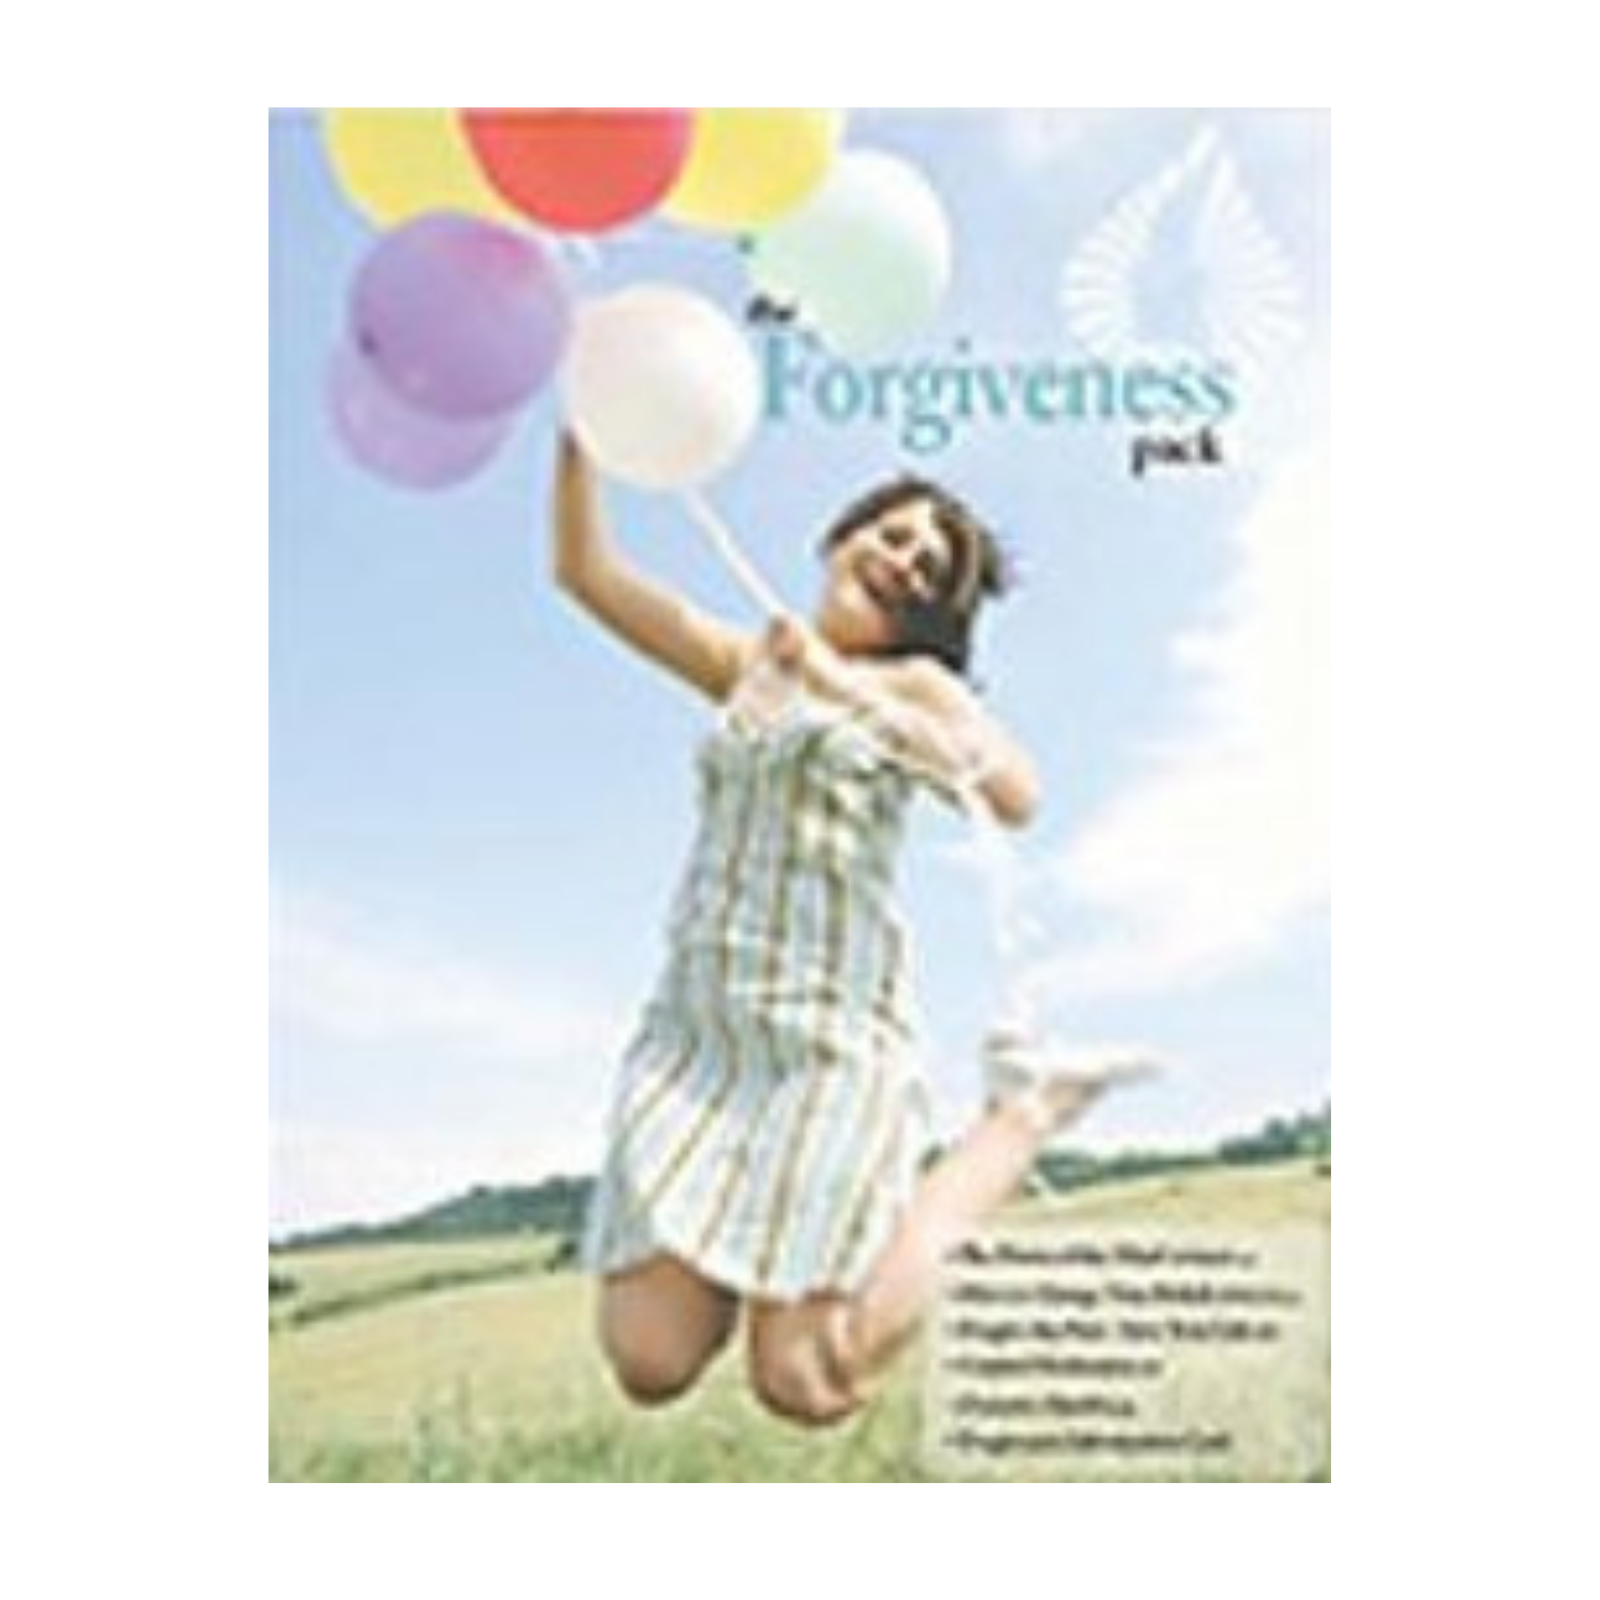 Forgiveness Pack